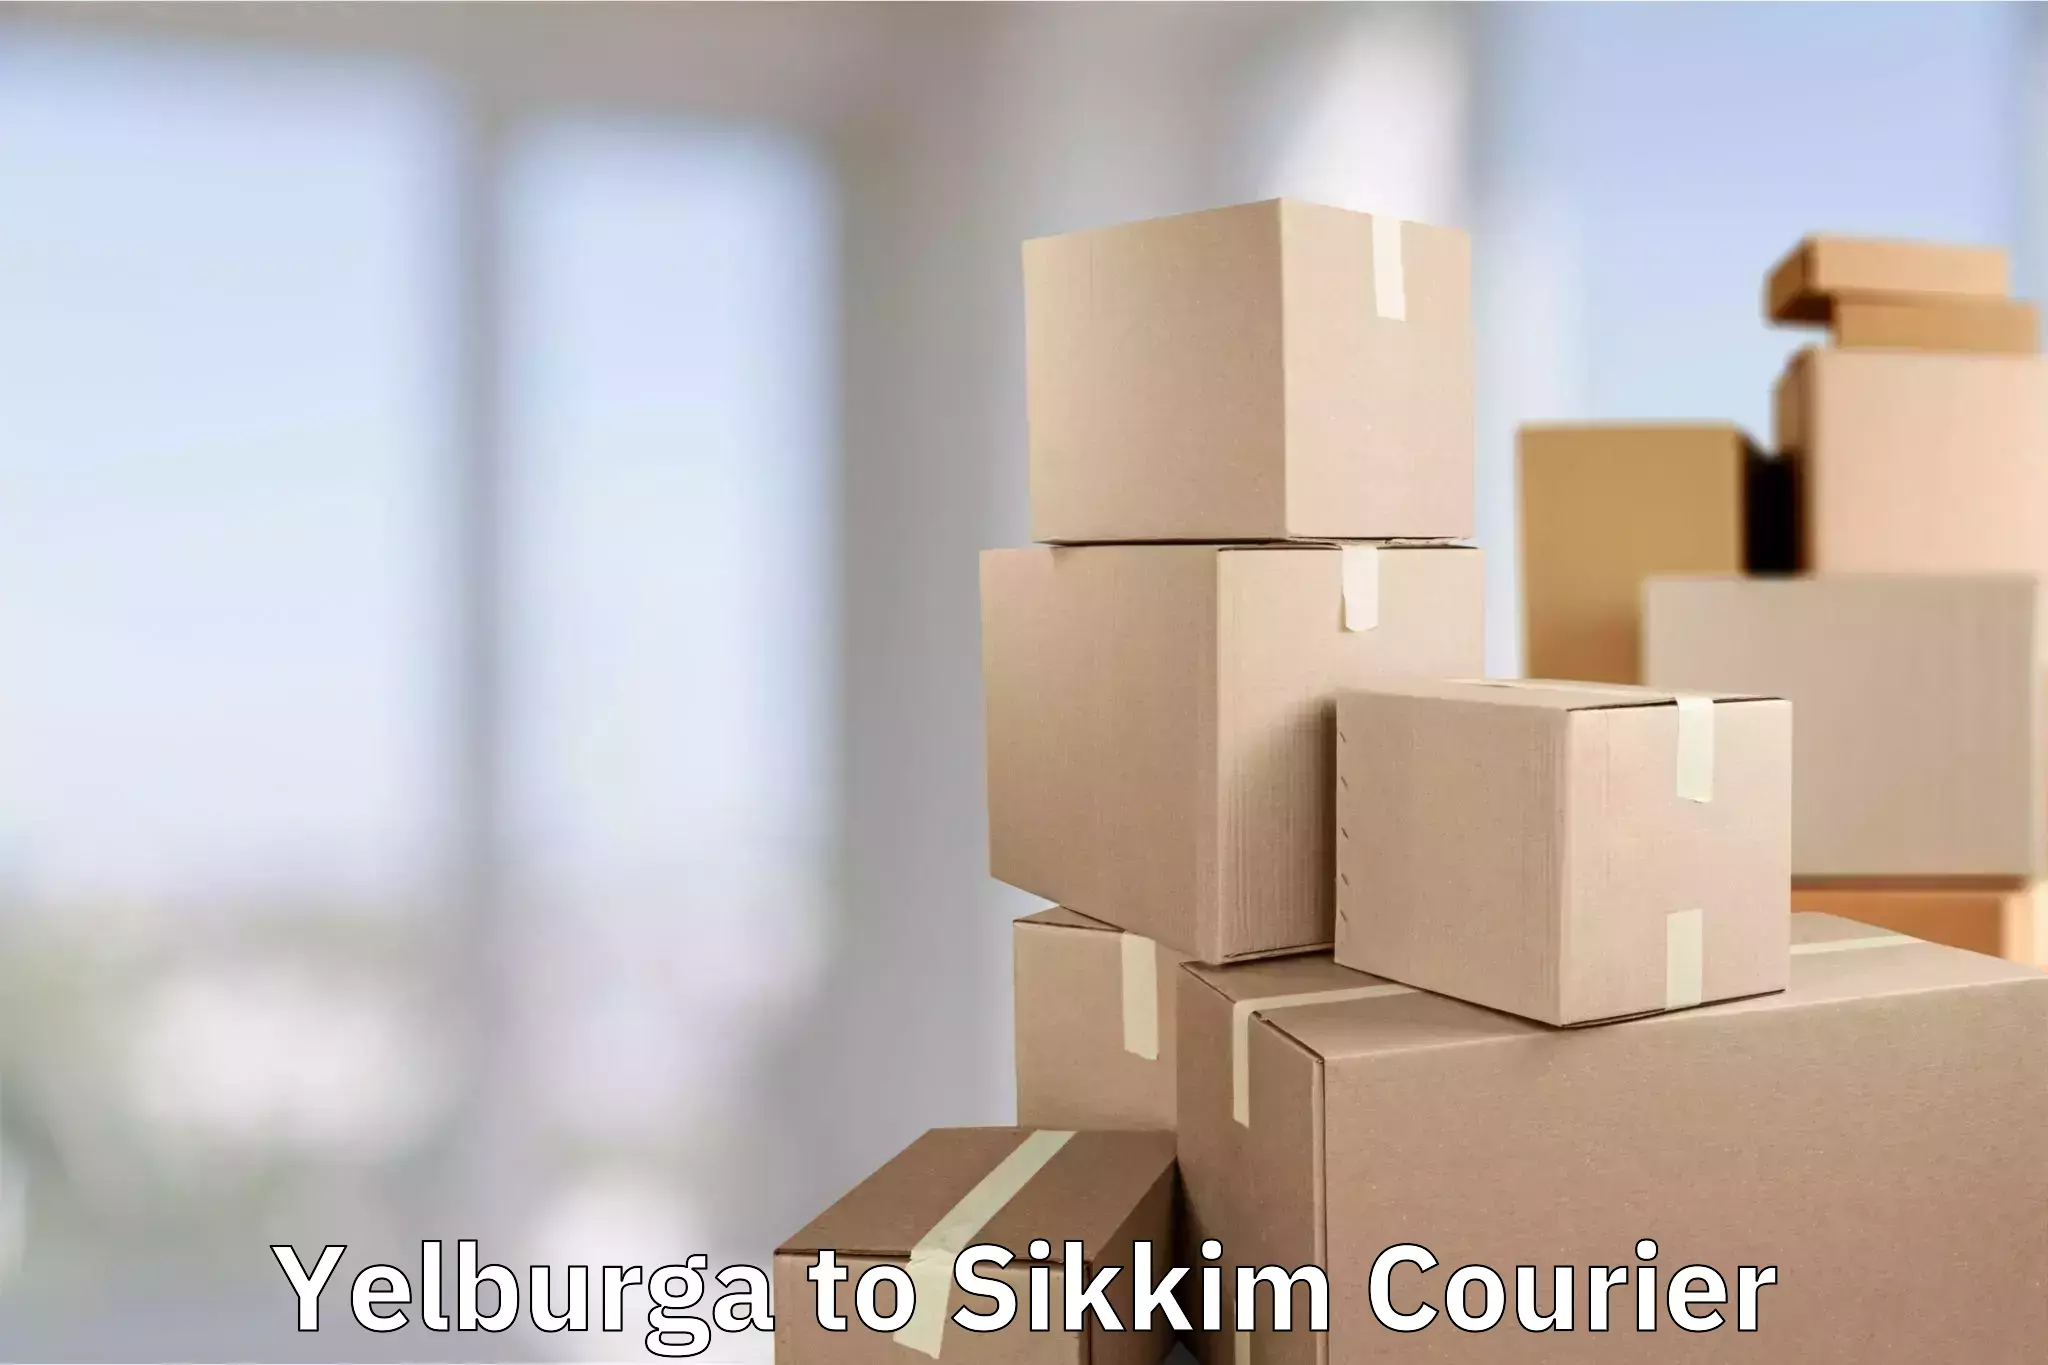 Luggage shipment tracking Yelburga to East Sikkim